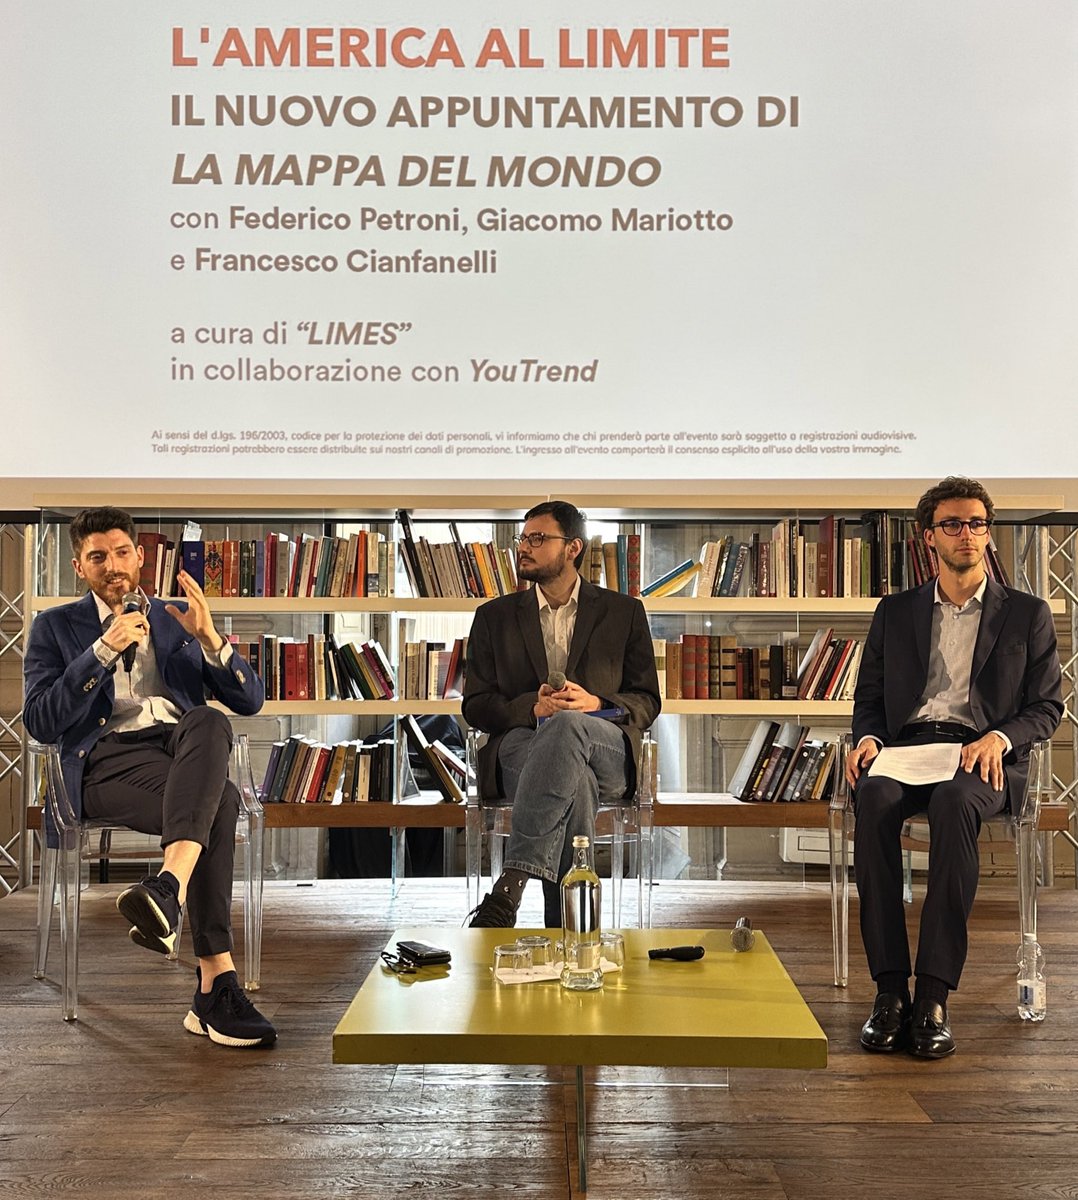 L’America al limite. Alla Fondazione Circolo dei Lettori di Torino, io e @FedericoPetroni abbiamo presentato il nuovo numero di Limes, “Mal d’America”.